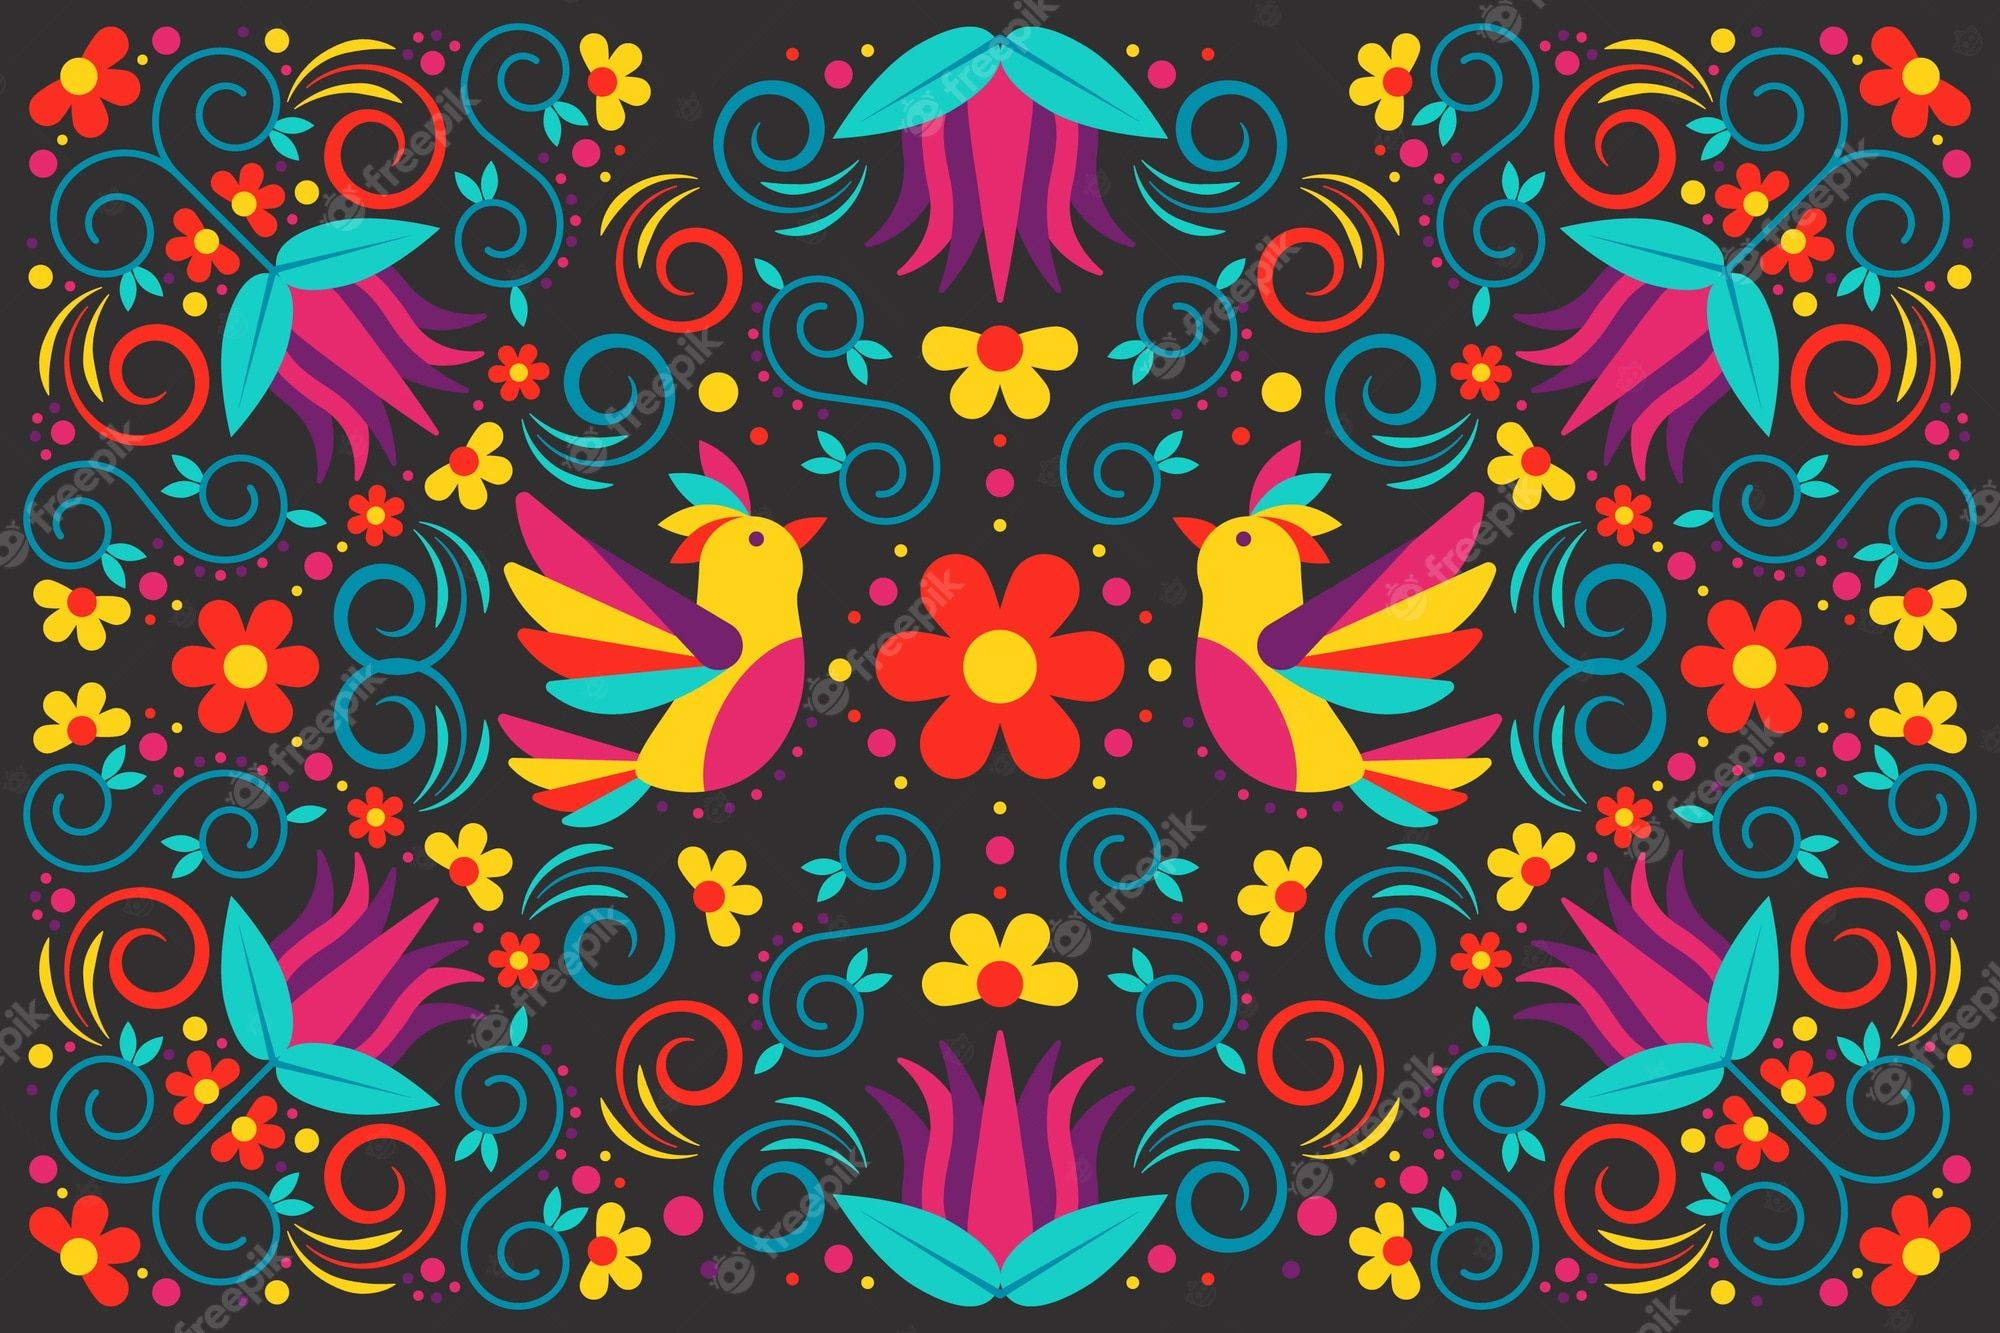  Farbige Kreise Hintergrundbild 2000x1333. Mehrfarbige mexikanische tapete